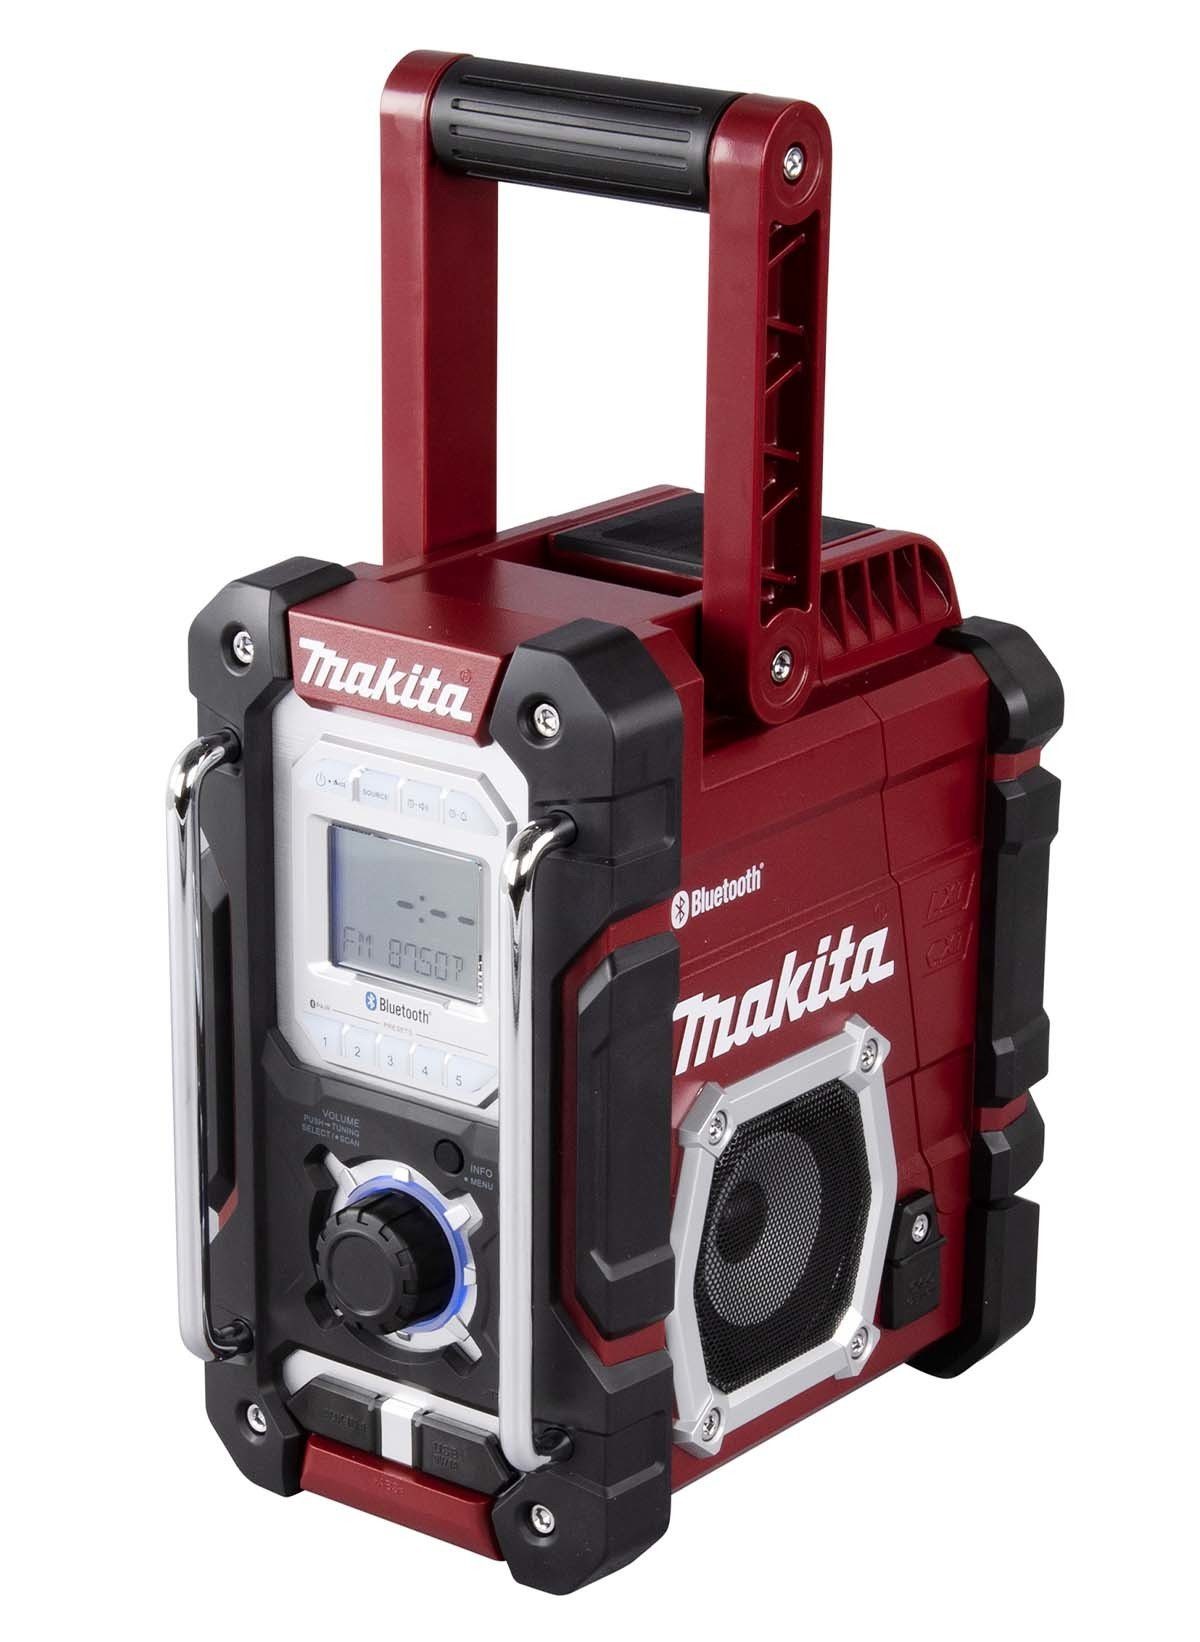 Makita »DMR 108« Baustellenradio (Bluetooth, mit Spritzschutz bis  Schutzklasse IP64 und Weckfunktion, inklusive Aux-Anschluss für  MP3-Kompatibilität und einen USB-Anschluss um Ihr Mobilgerät zu laden)  online kaufen | OTTO